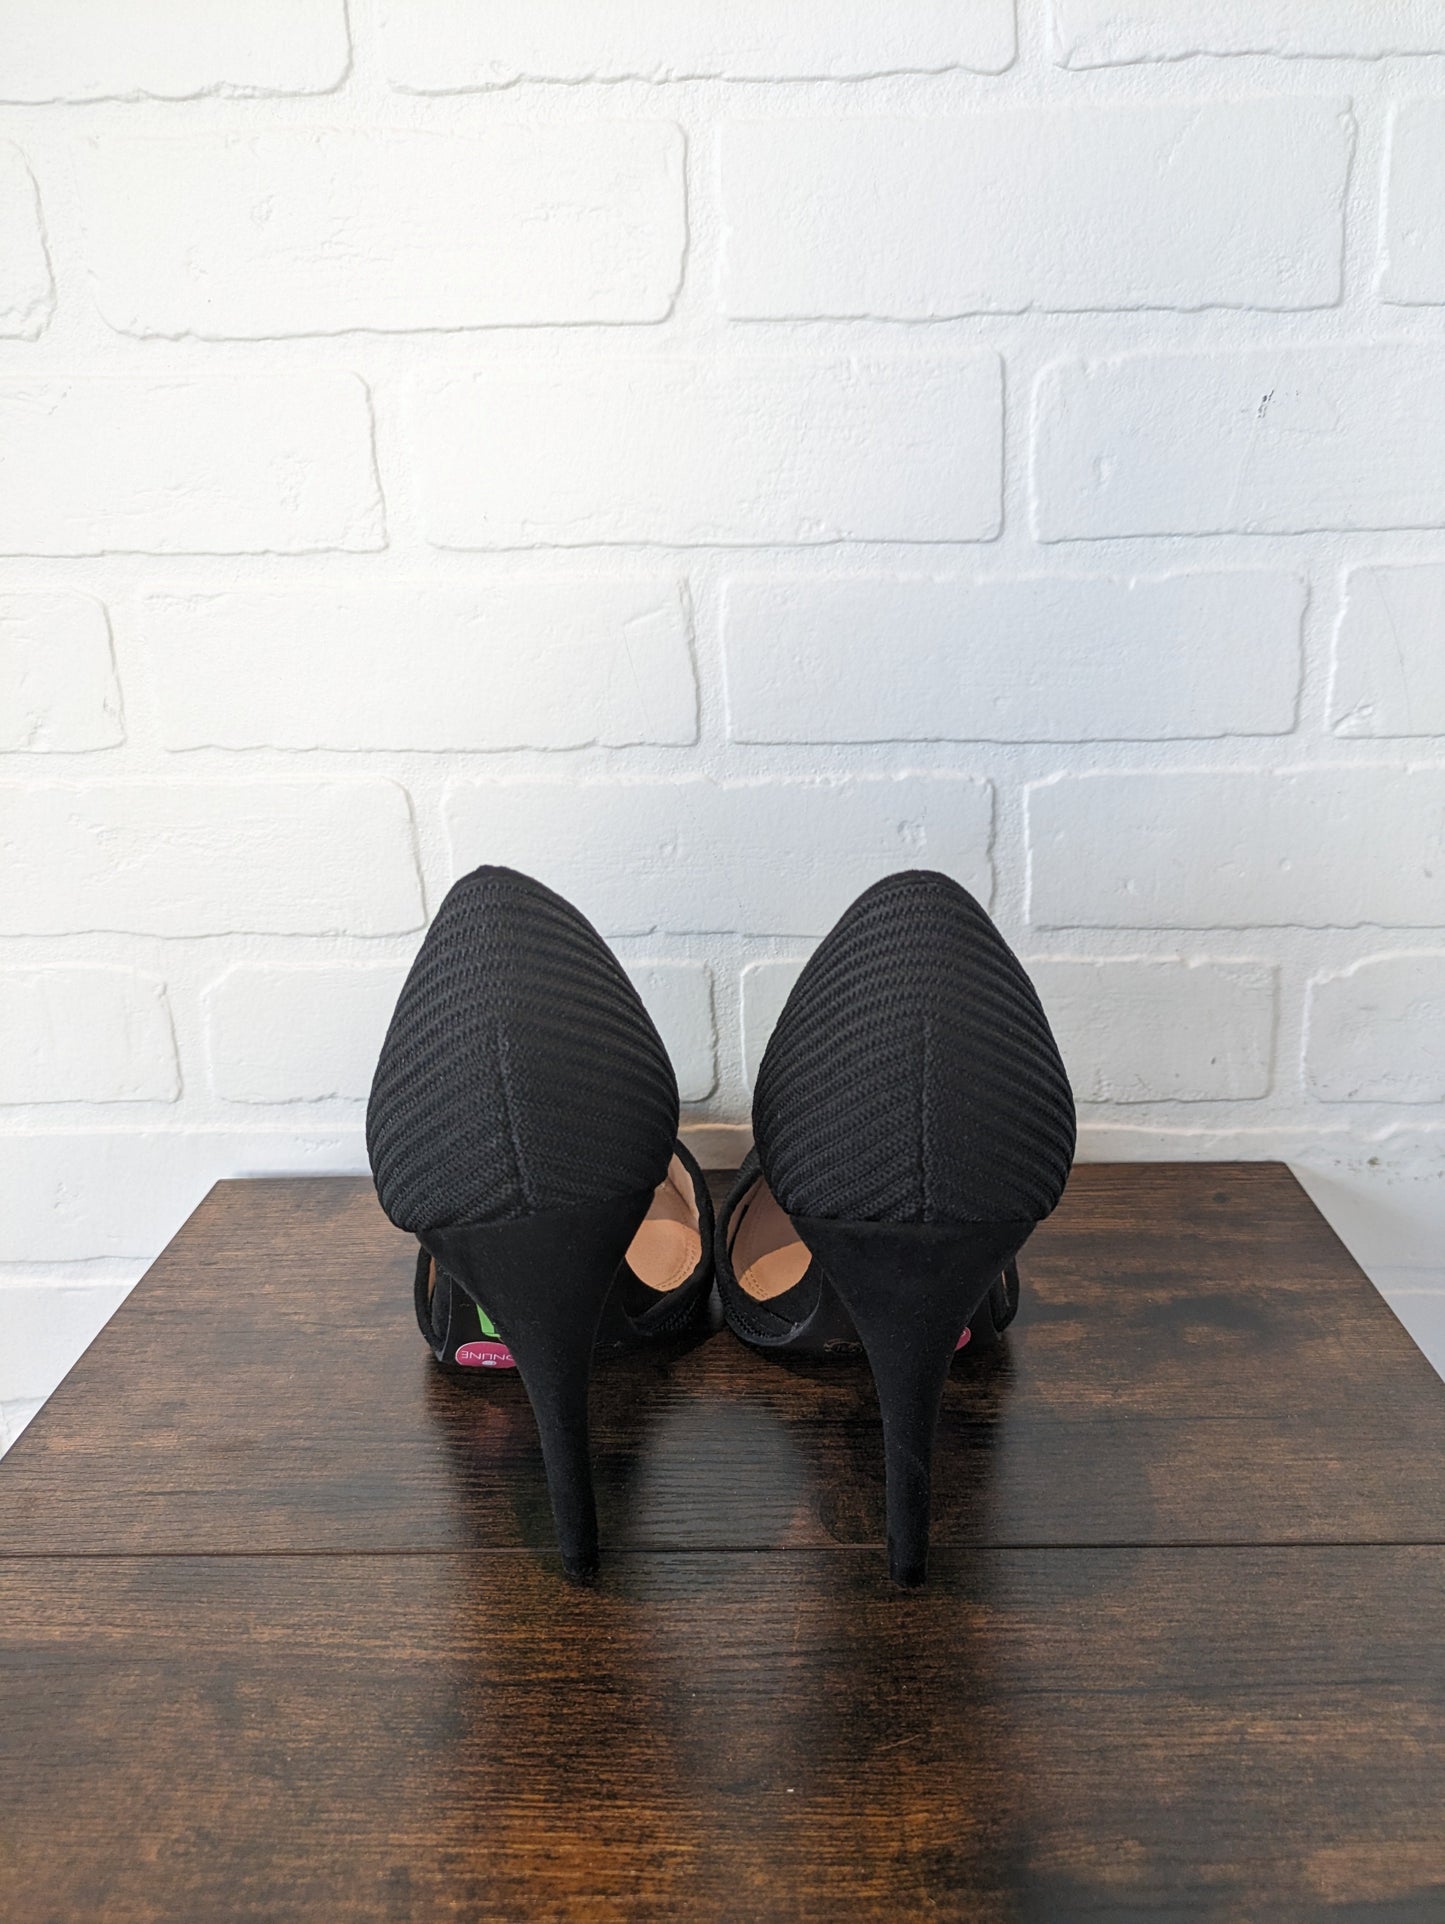 Sandals Heels Stiletto By Badgley Mischka  Size: 7